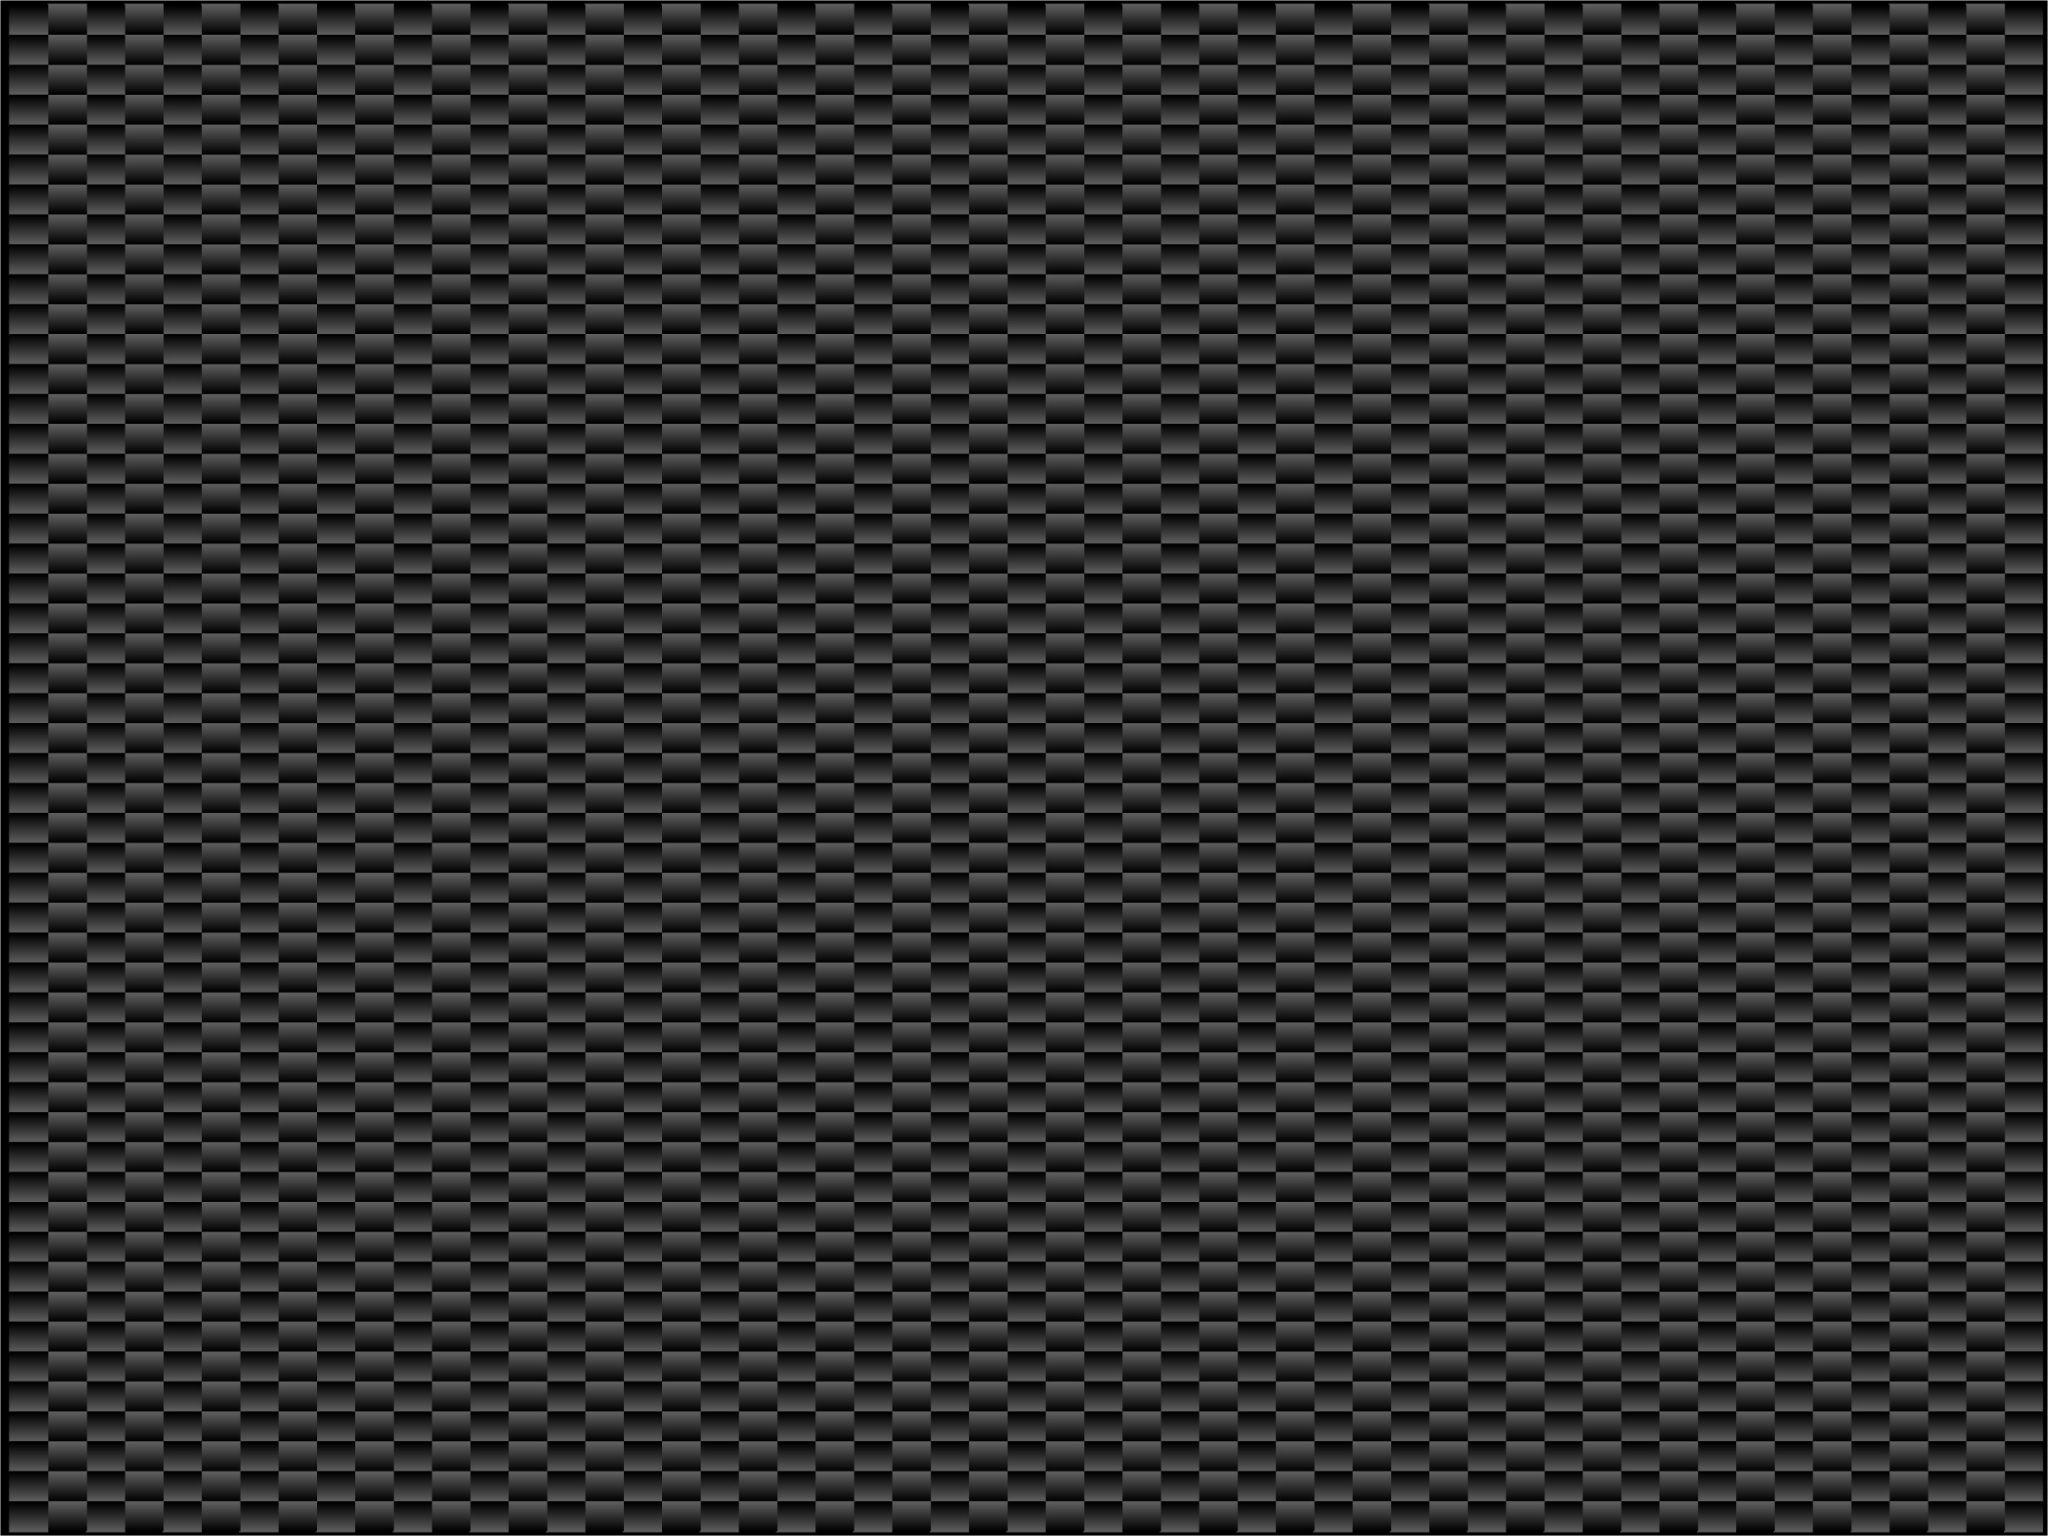 Carbon Fiber iPhone Wallpaper